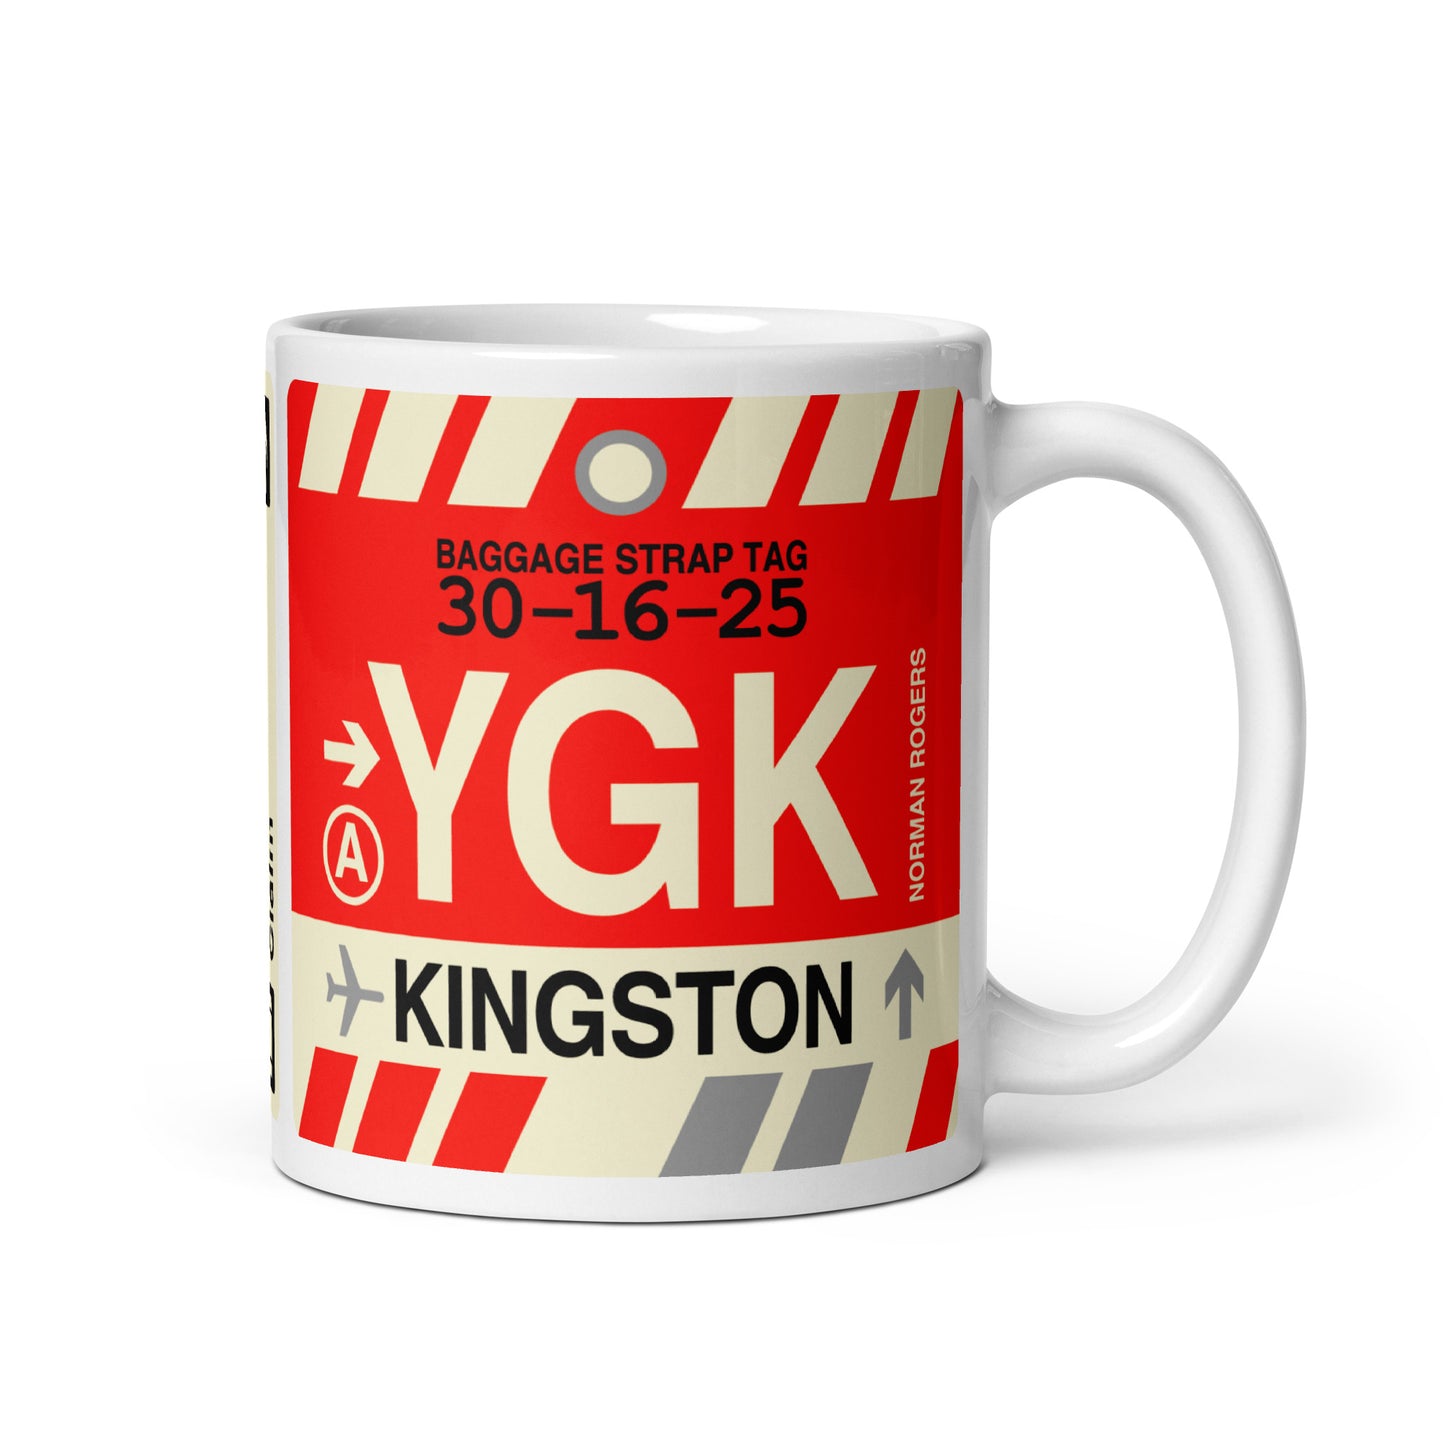 Travel Gift Coffee Mug • YGK Kingston • YHM Designs - Image 01